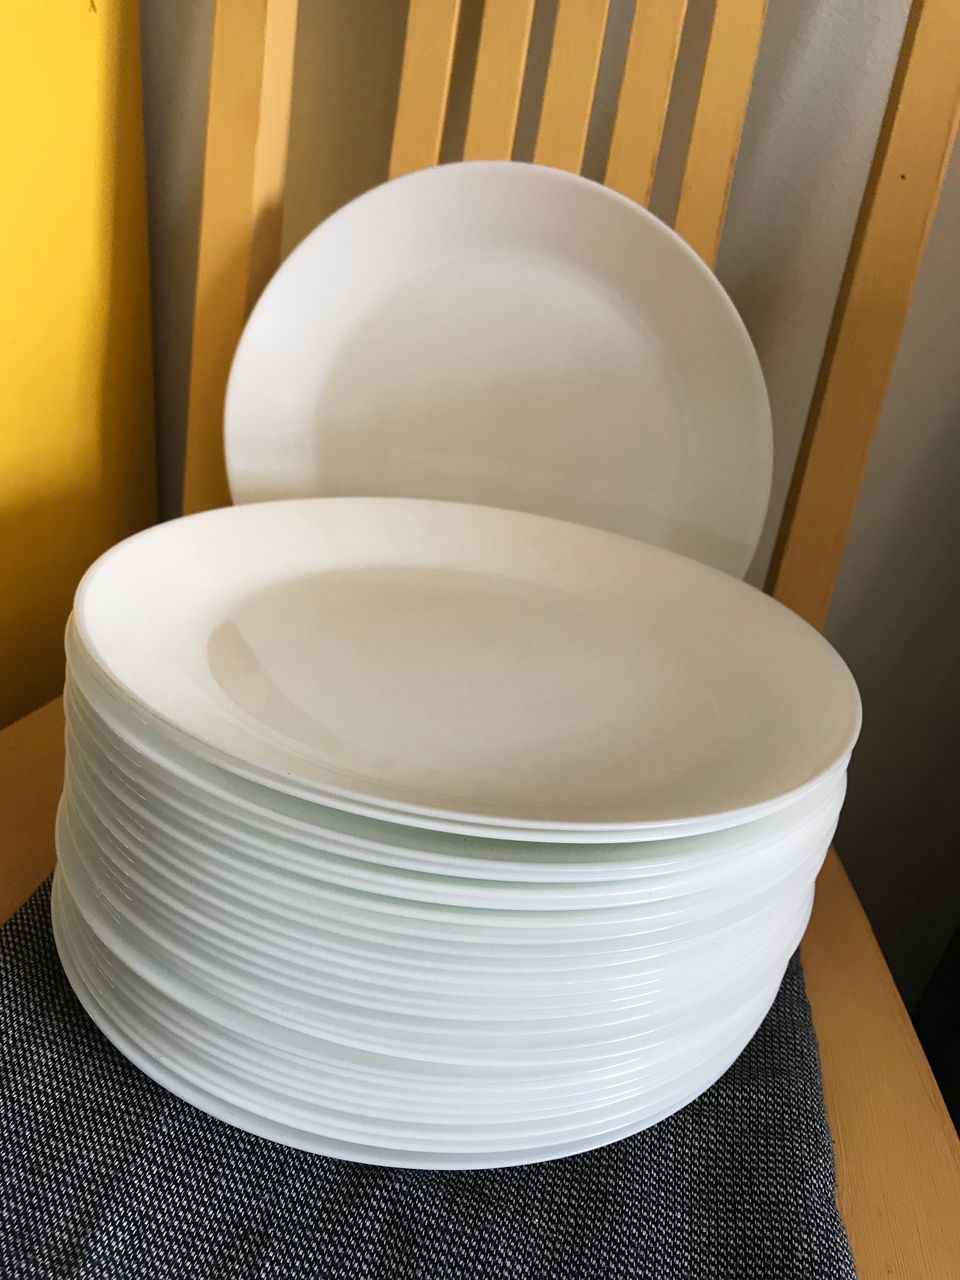 Ikea valkoinen ruokalautanen (26kpl)